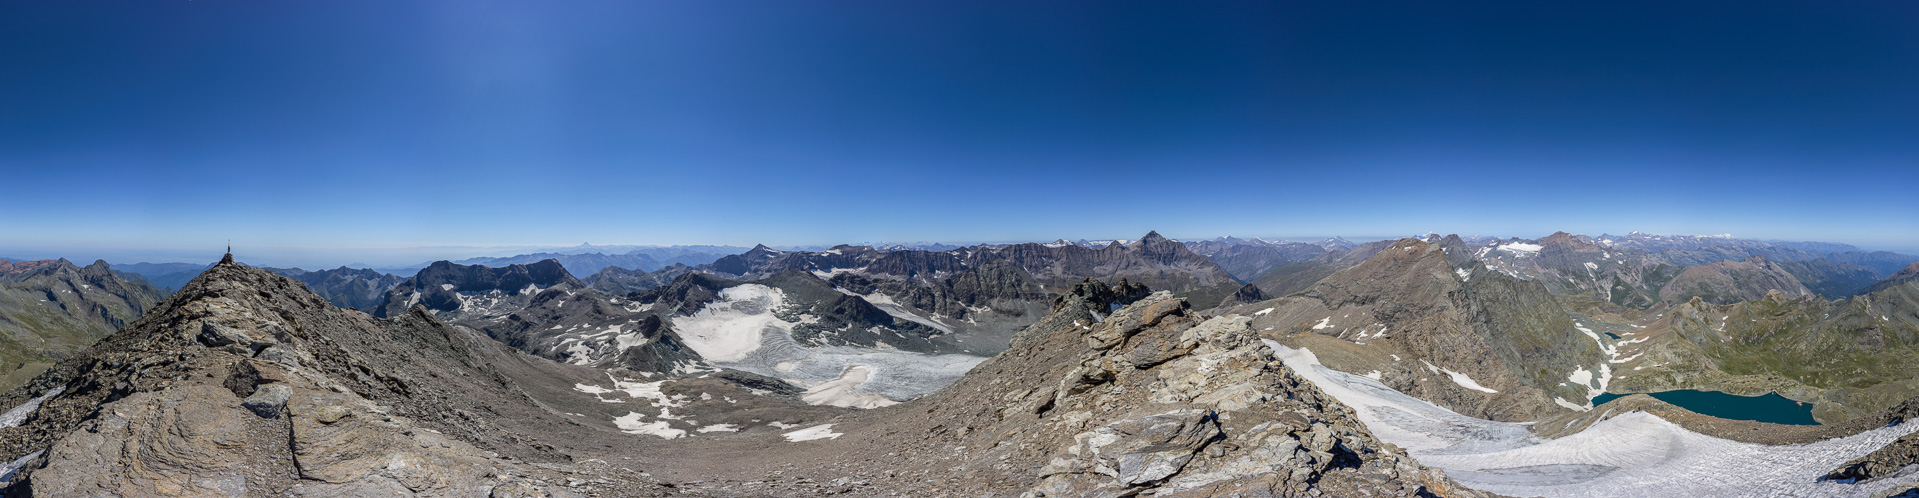 Ein sagenhaftes Panorama von einem der entlegensten Orte der Alpen.